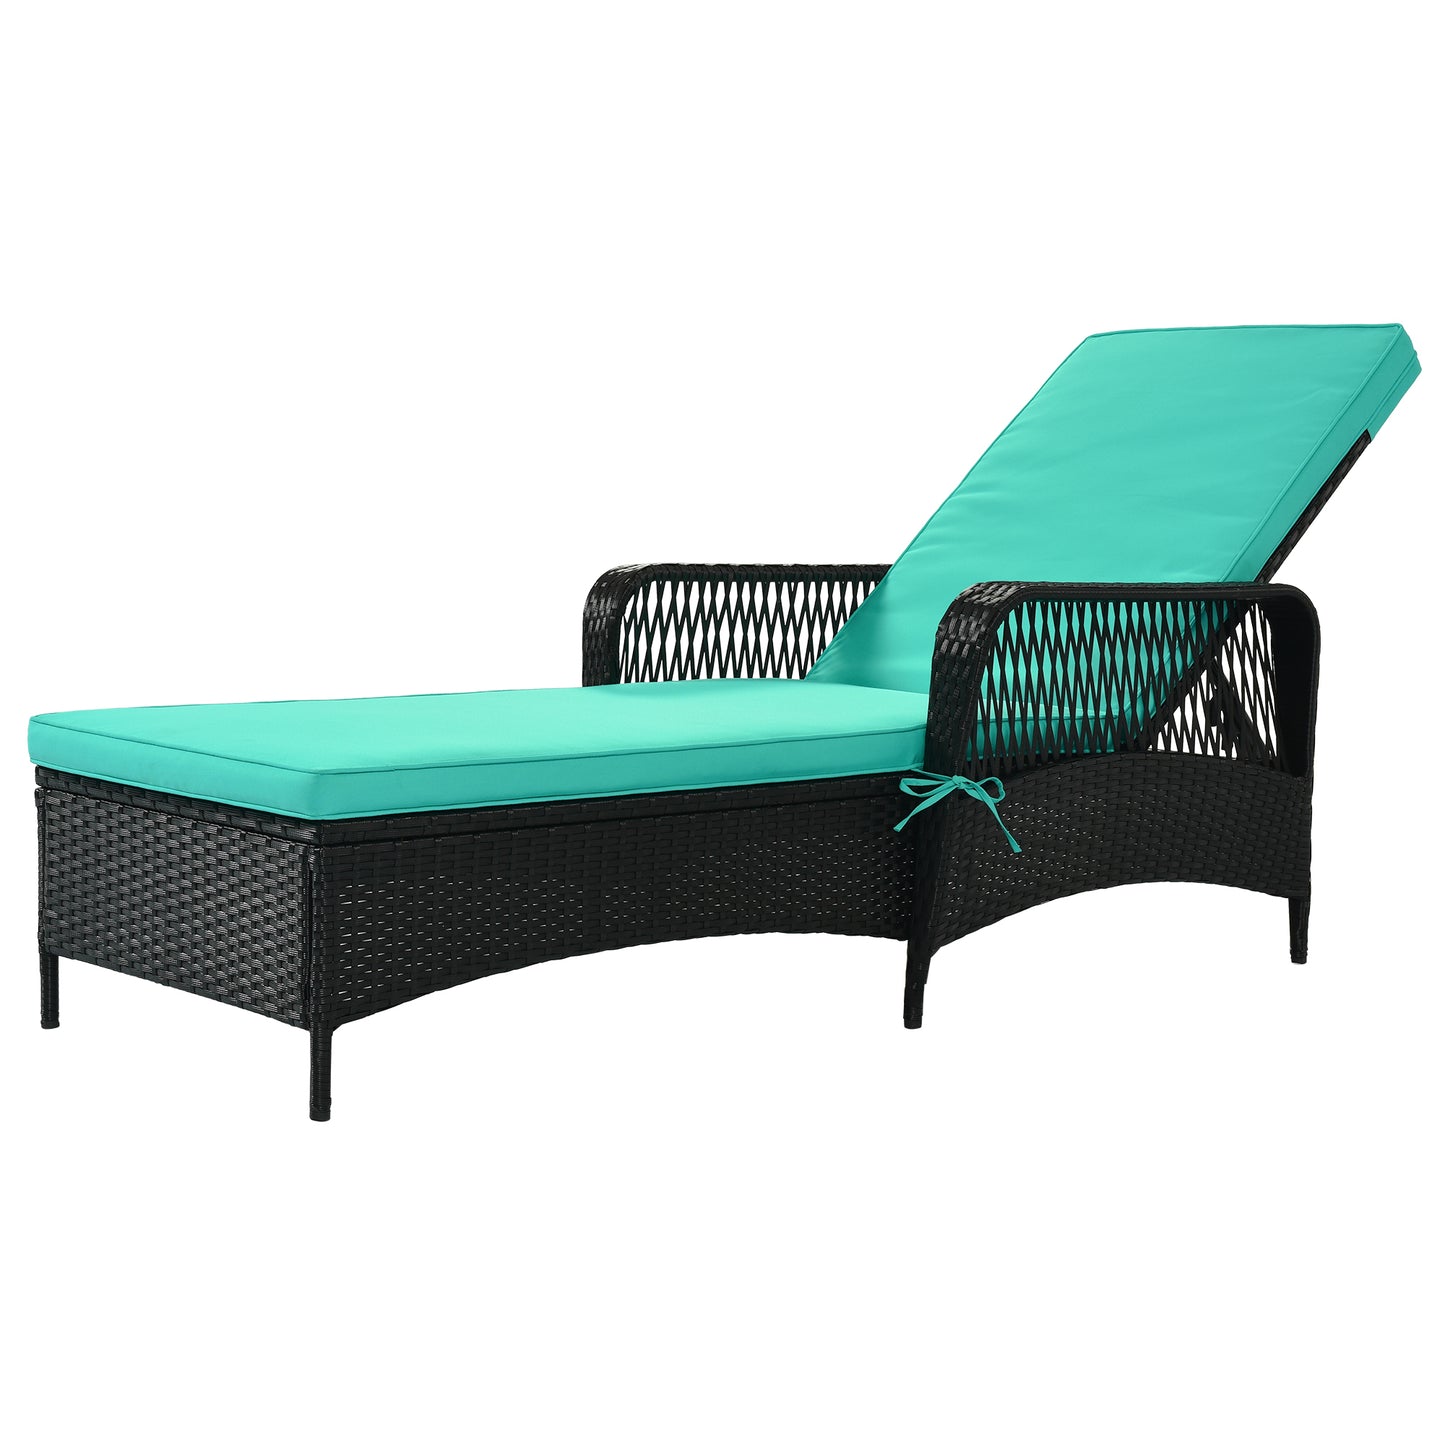 GO Outdoor patio pool PE rattan wicker chair wicker sun lounger, Adjustable backrest, green cushion, Black wicker (1 set)